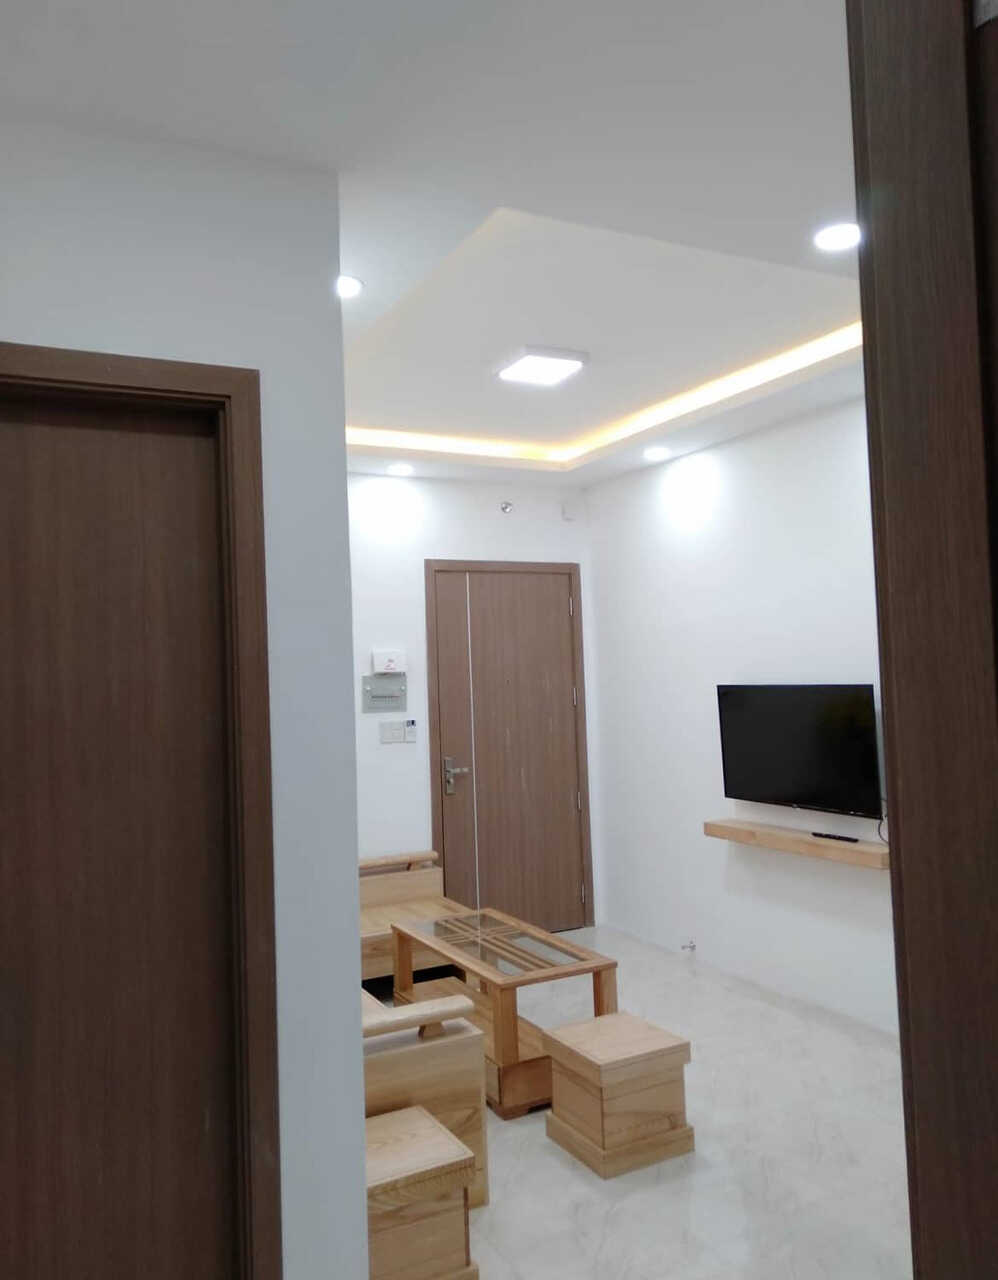 Chính chủ cho thuê căn hộ chung cư 2PN, 2WC, 1 Khách + Bếp, Full nội thất 60m2. Tại Mường Thanh Viễn Triều, Nha Trang.